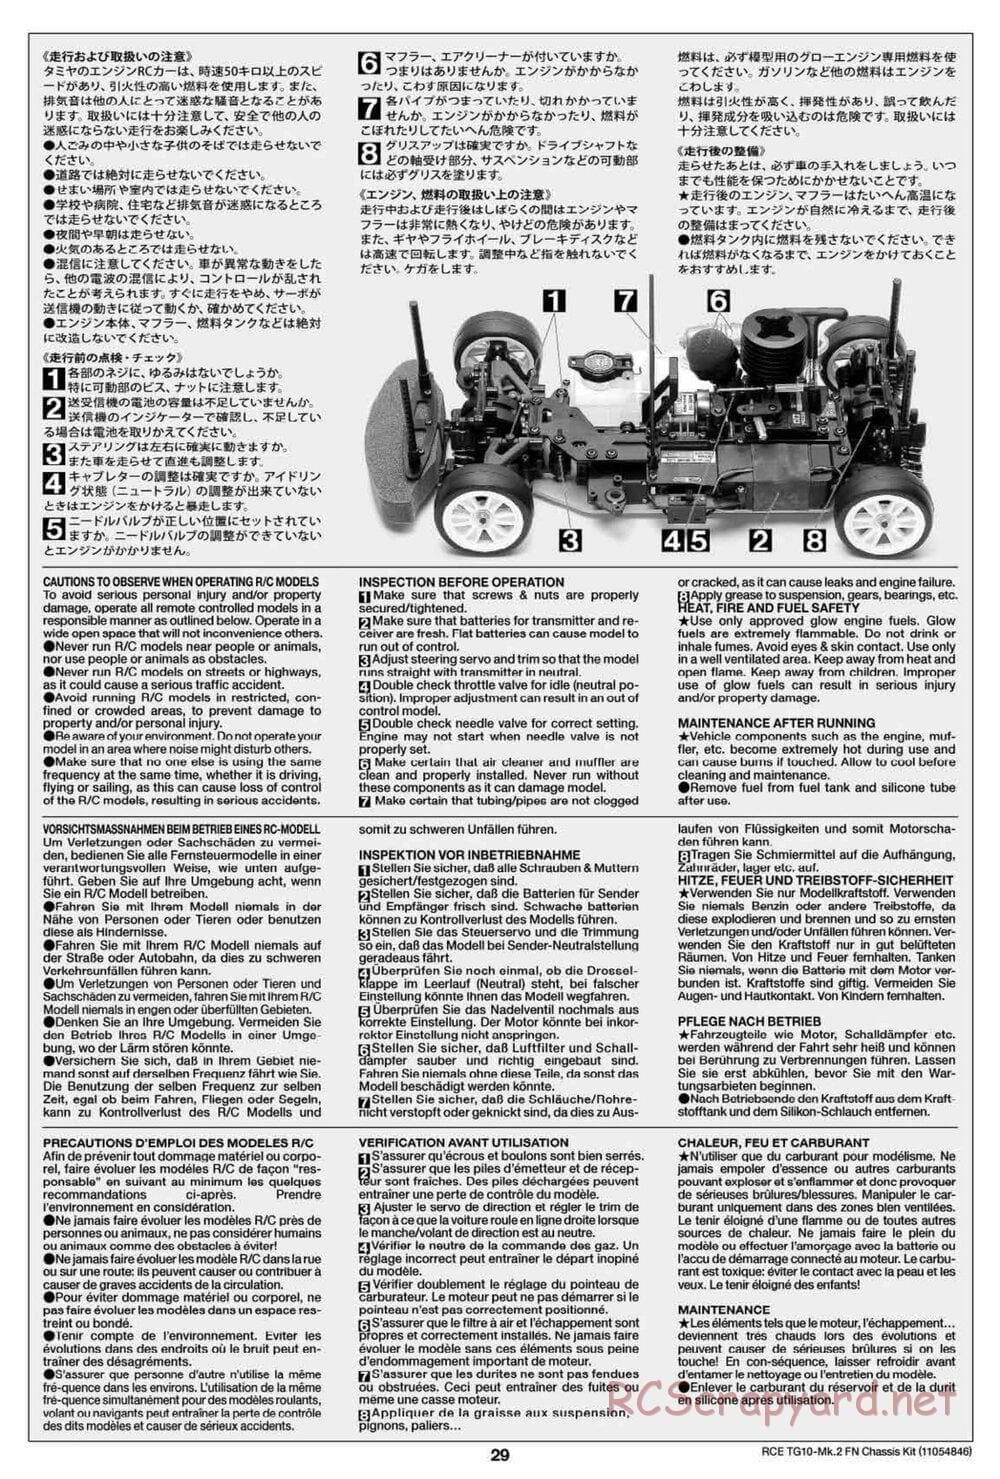 Tamiya - TG10 Mk.2 FN Chassis - Manual - Page 29